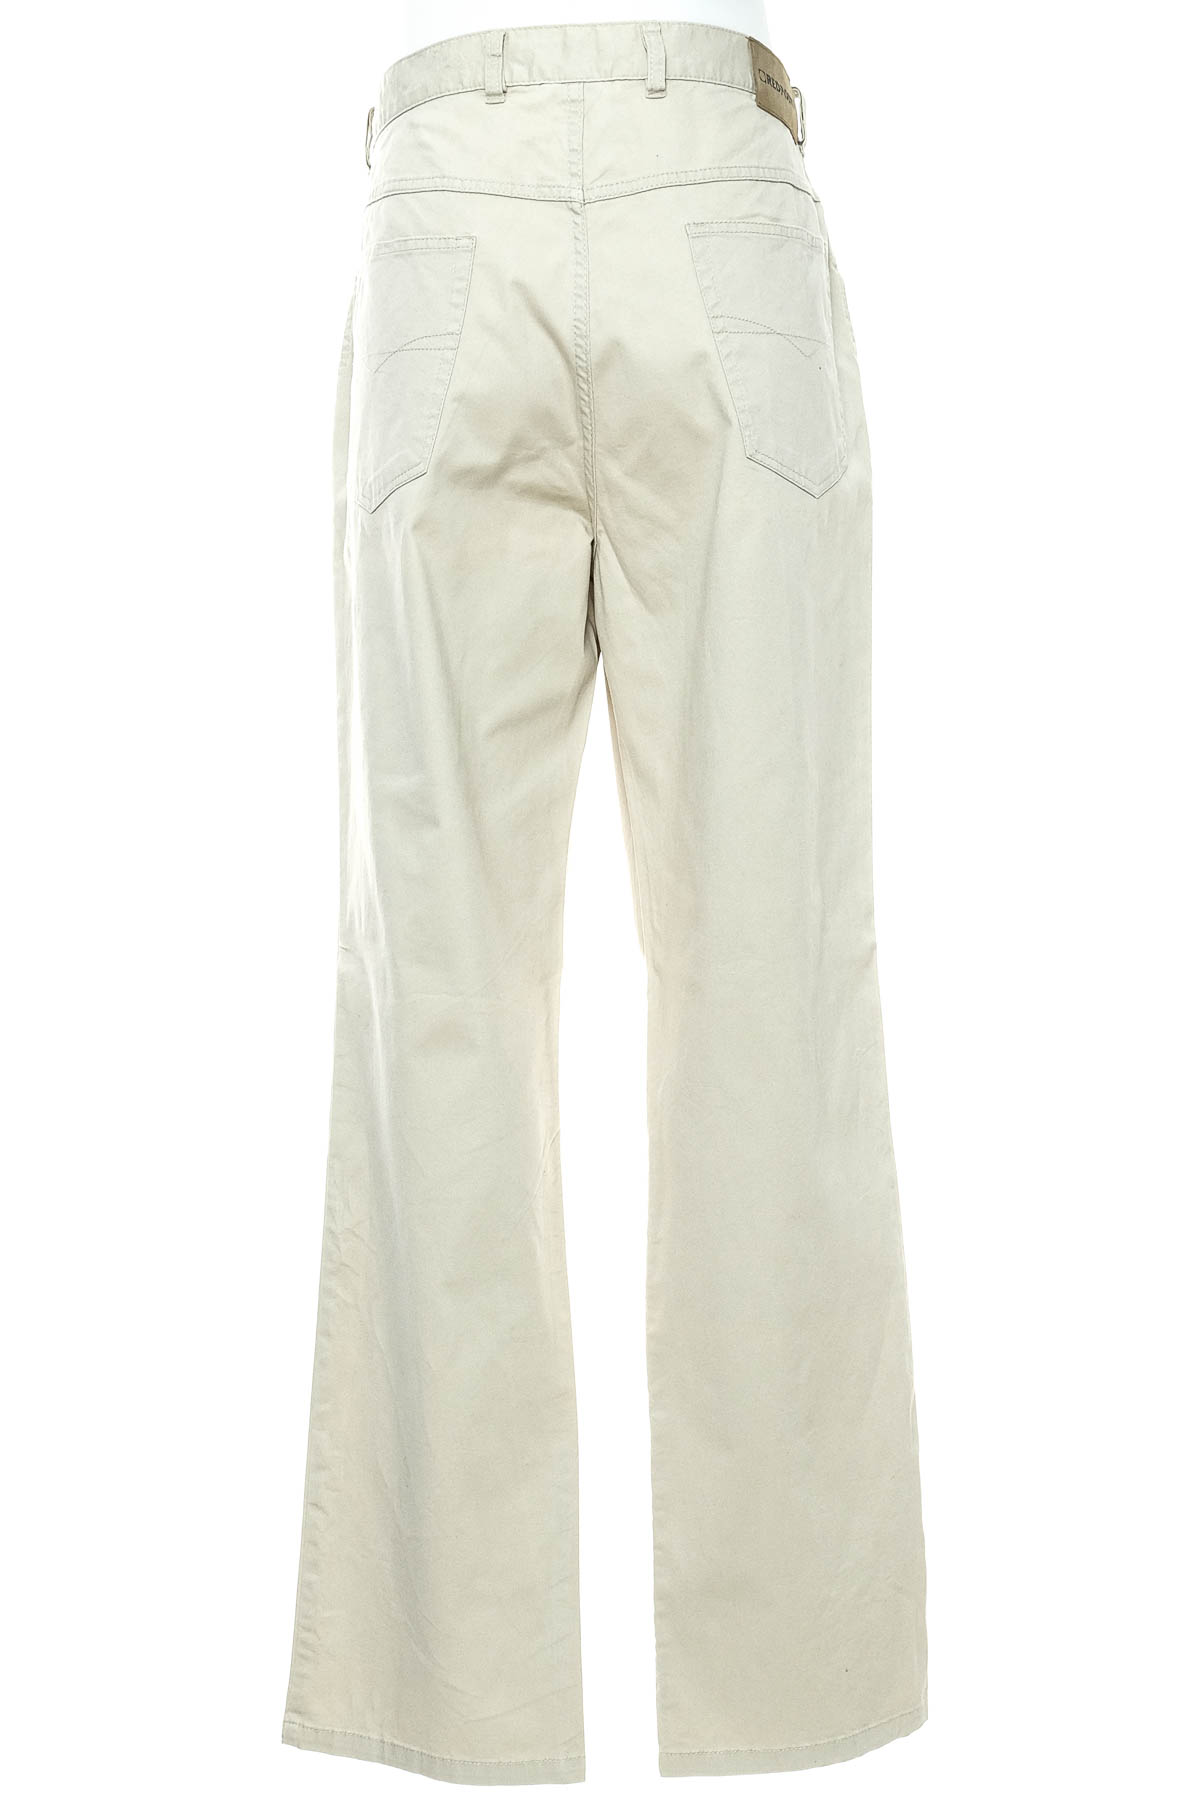 Pantalon pentru bărbați - Redpoint - 1